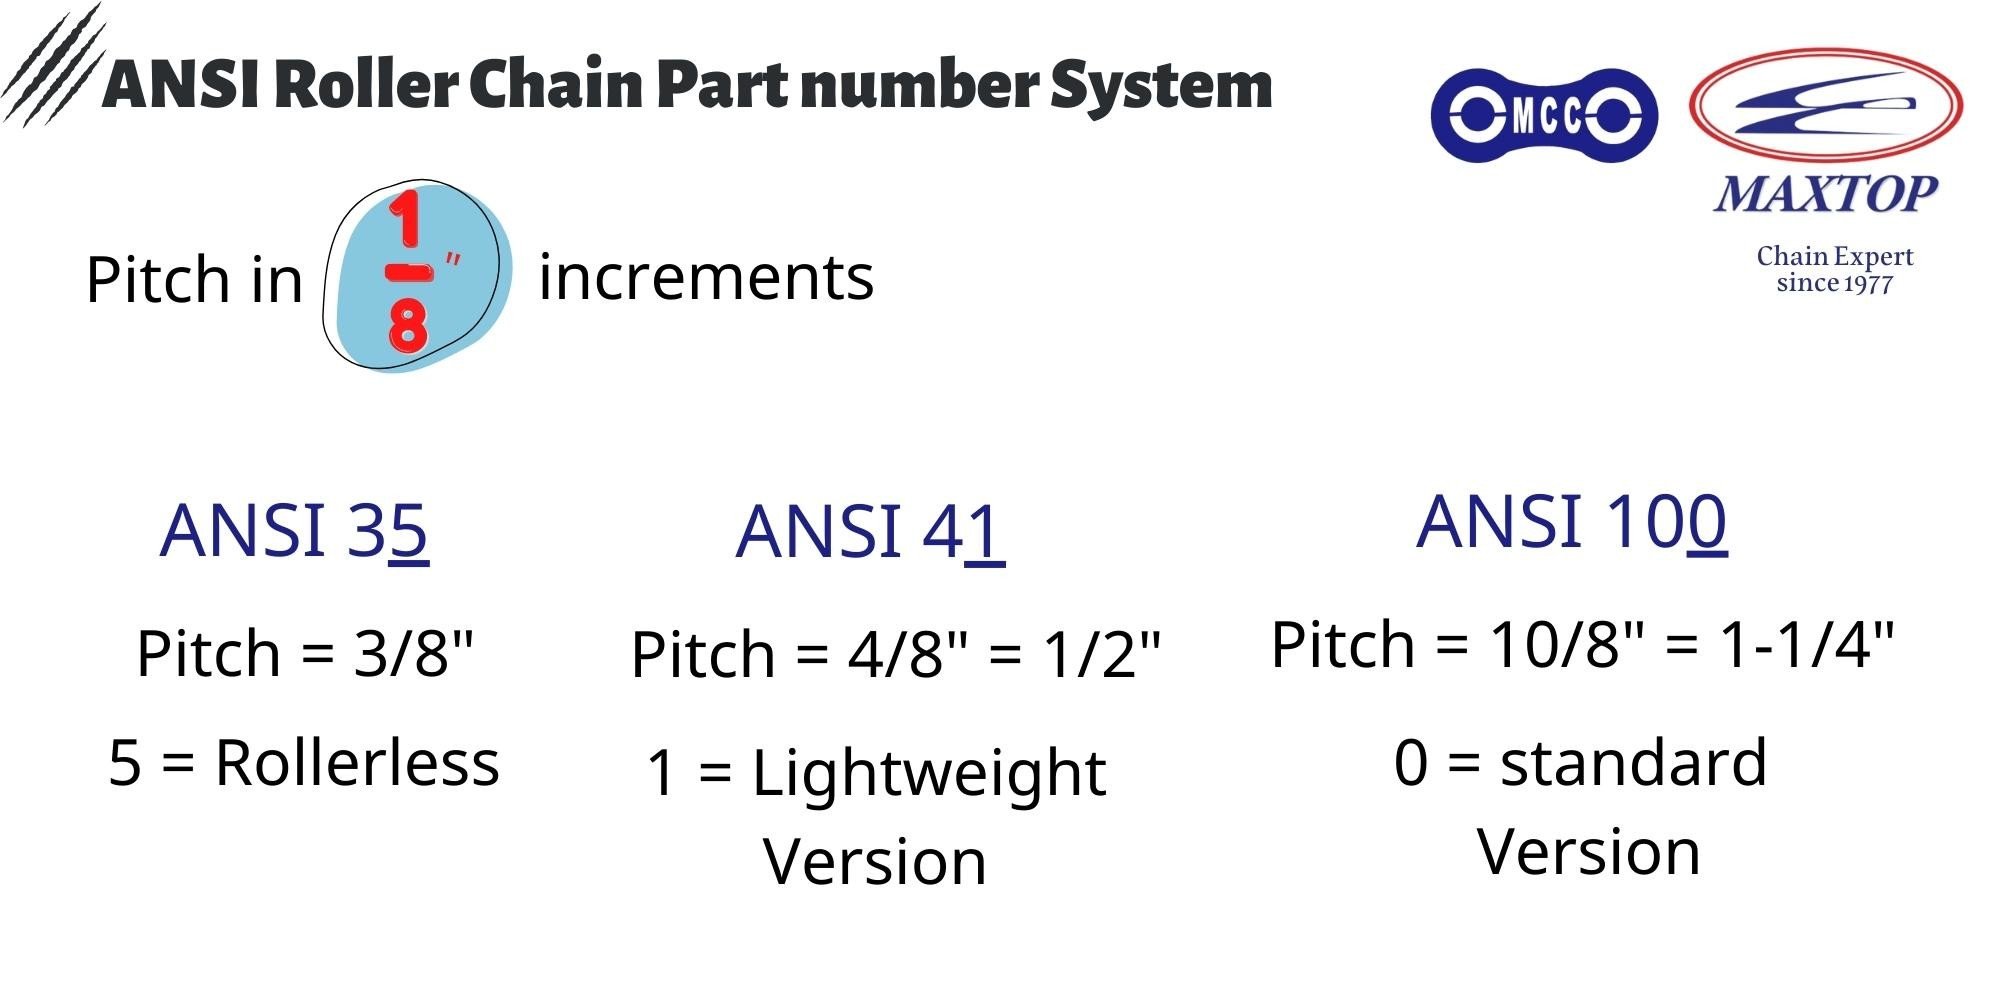 ANSI Roller Chain Part Number System(EN.)